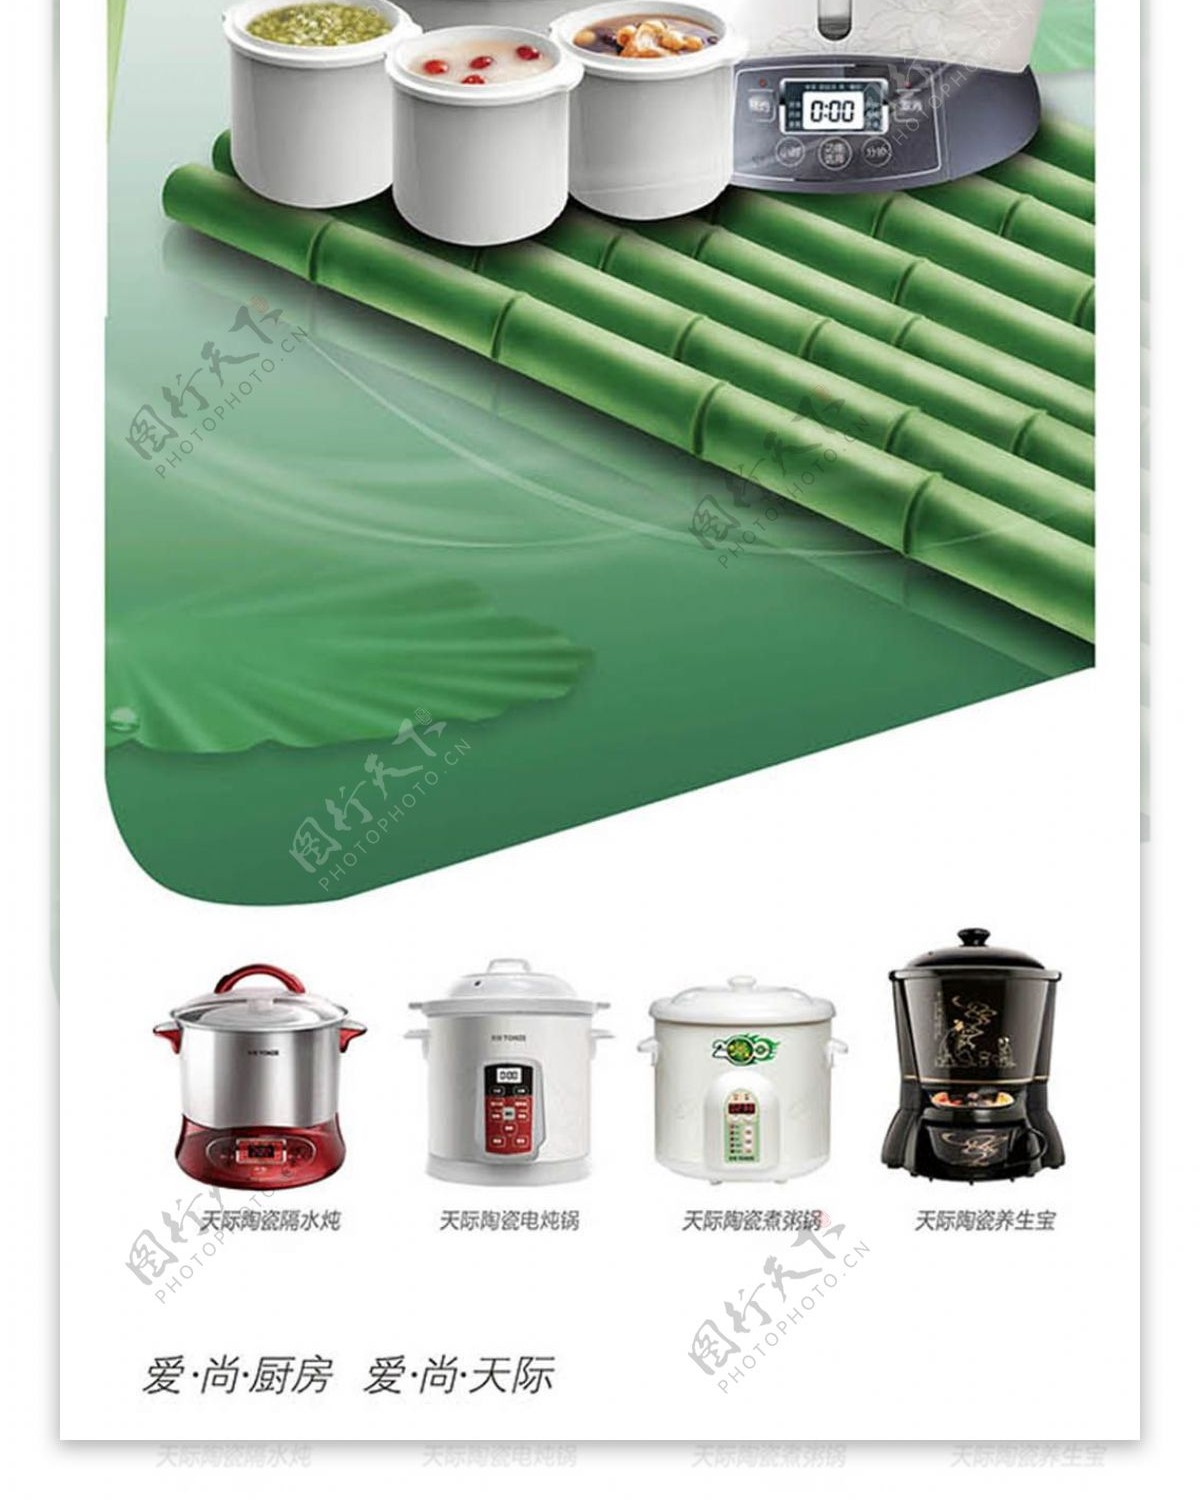 厨房电器电饭煲创意宣传海报x展架模板